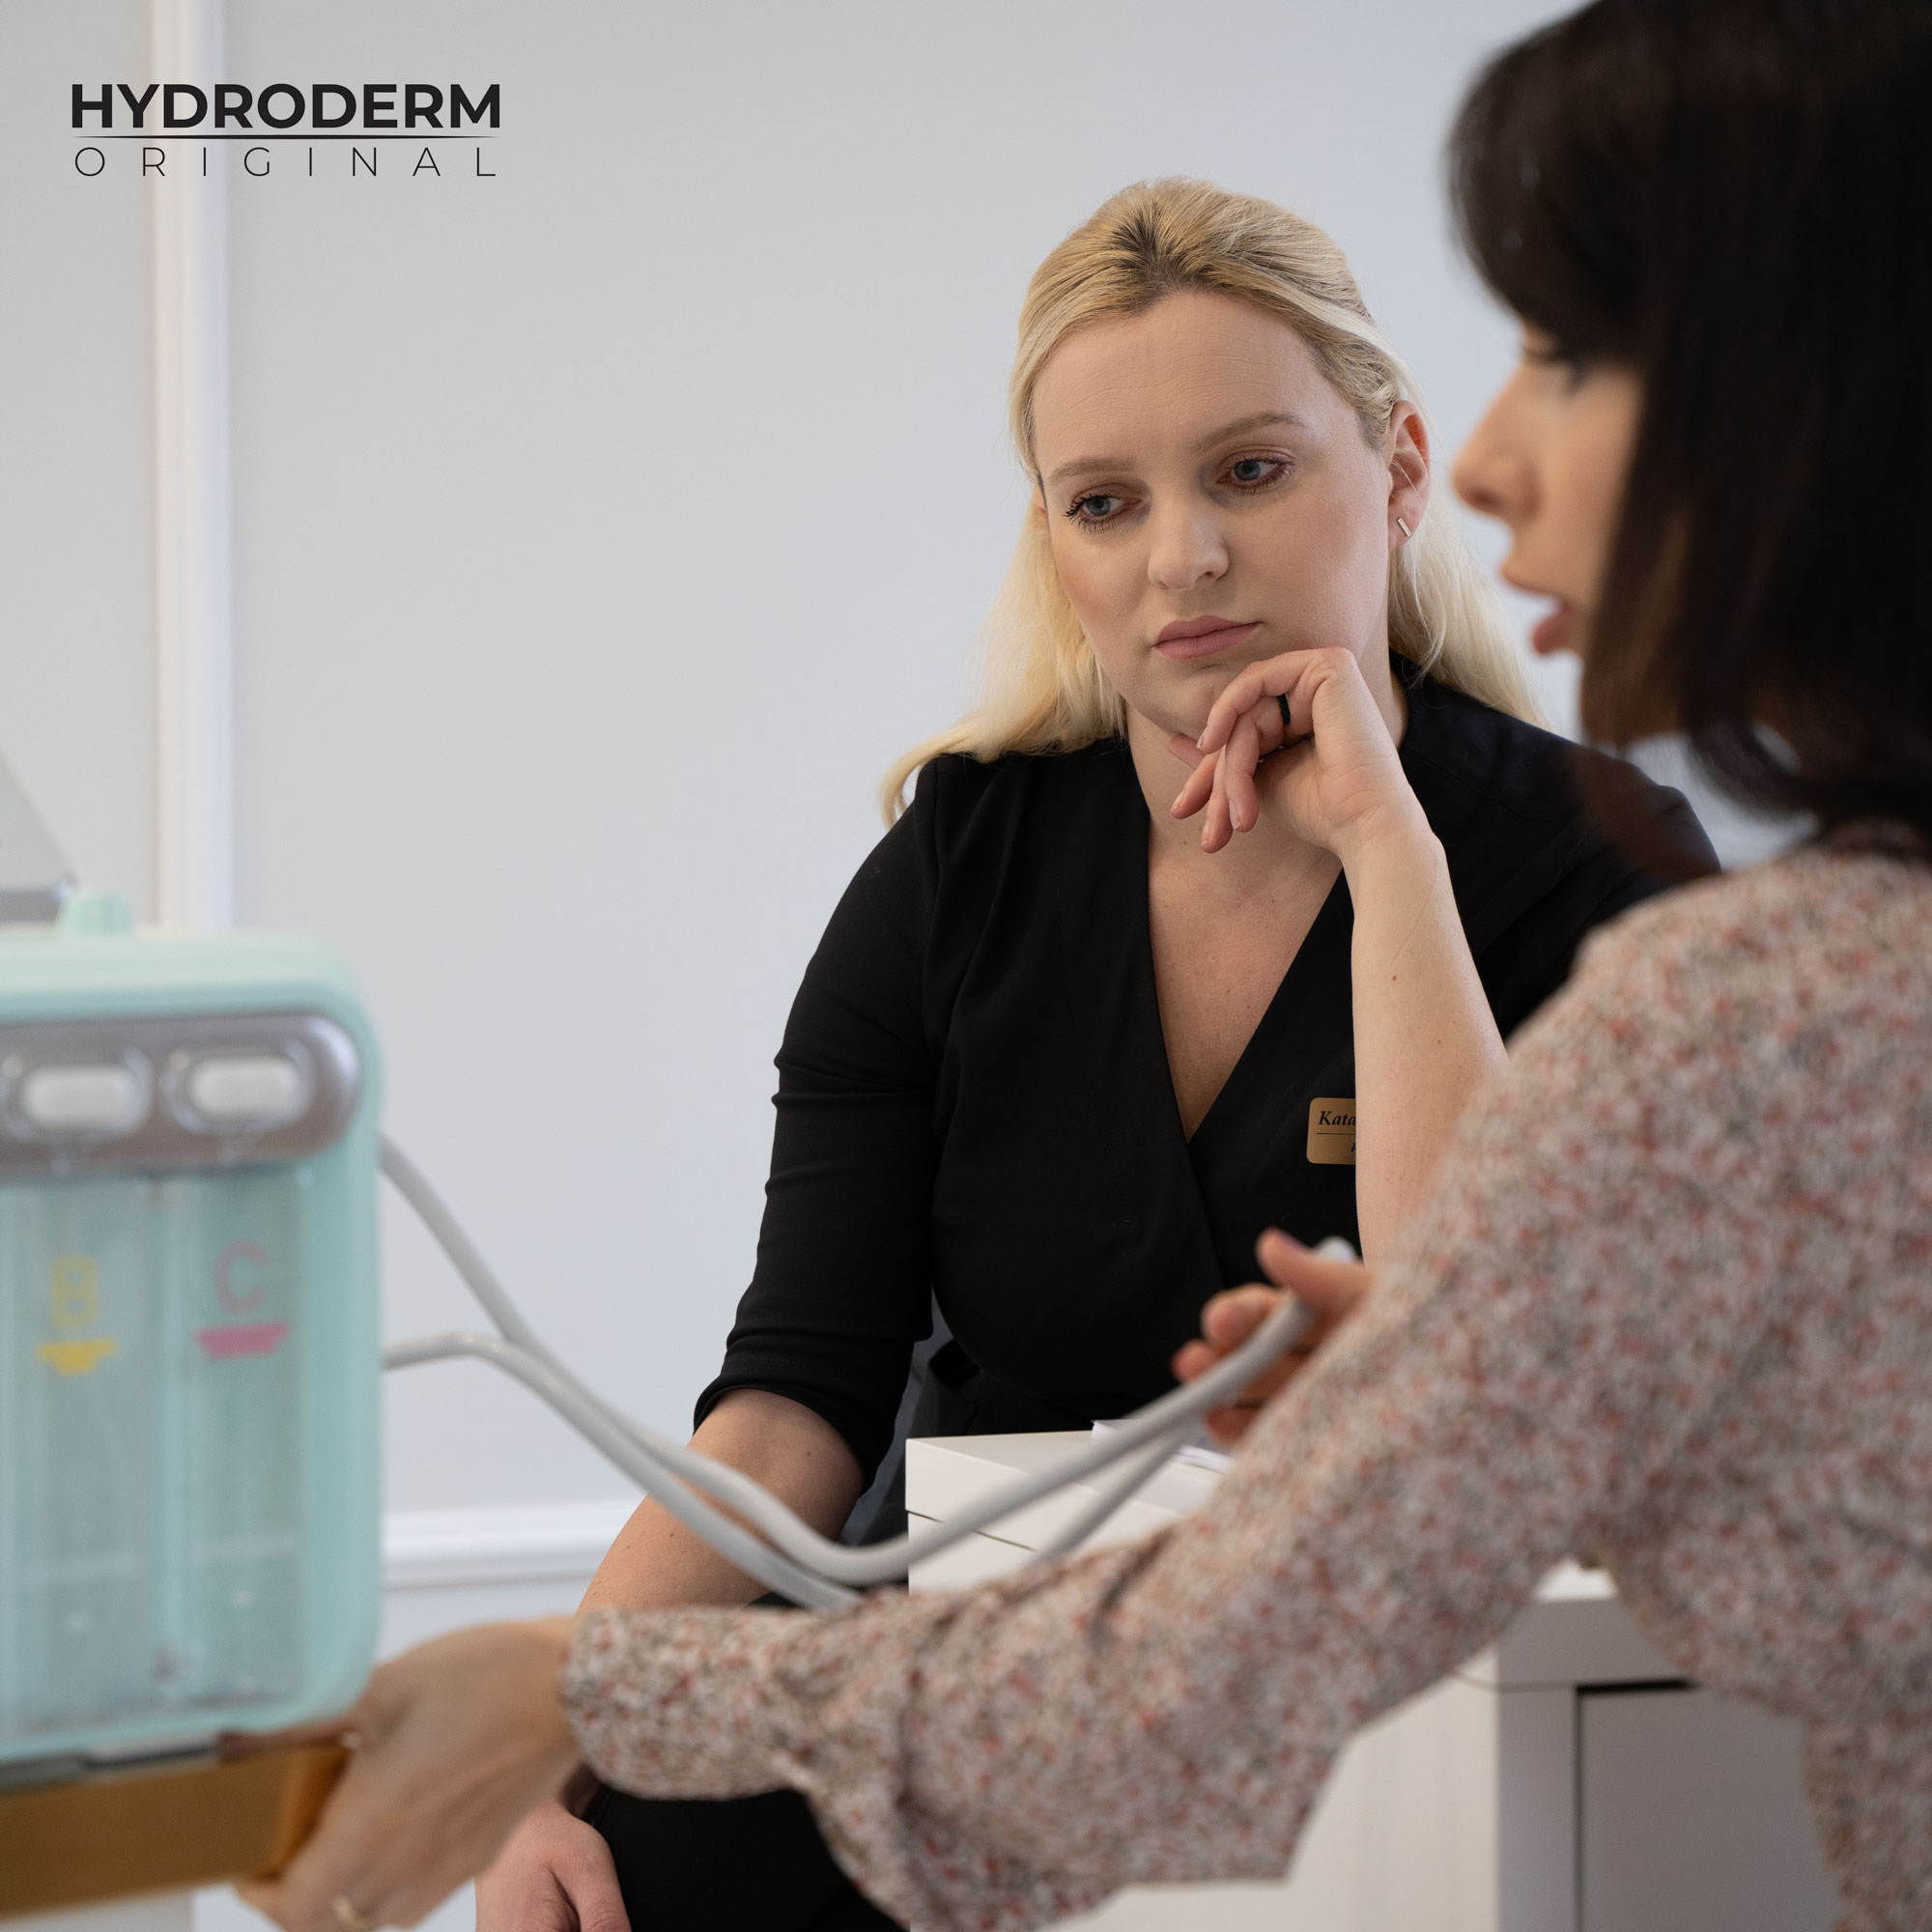 Kosmetolog przygotowuje szczegółową prezentację w ramach szkolenia maszyny Hydroderm 9w1 Original